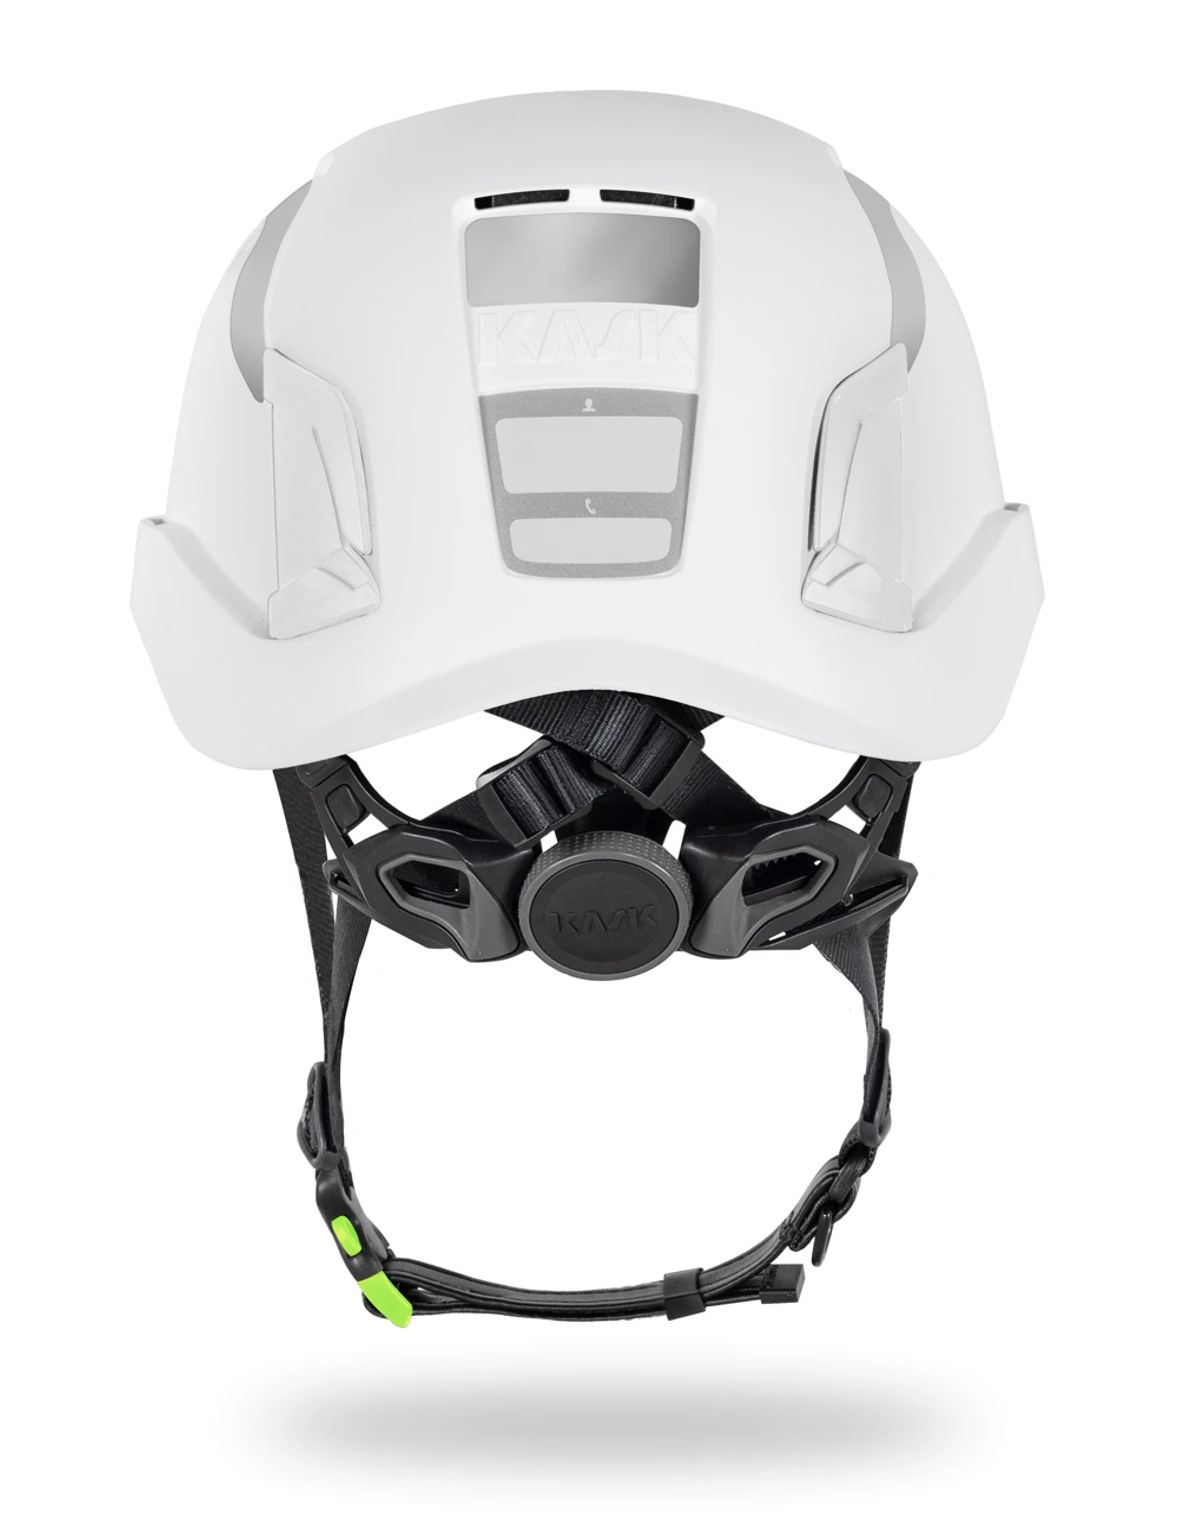 Kask Zenith X2 HI VIZ Helmets